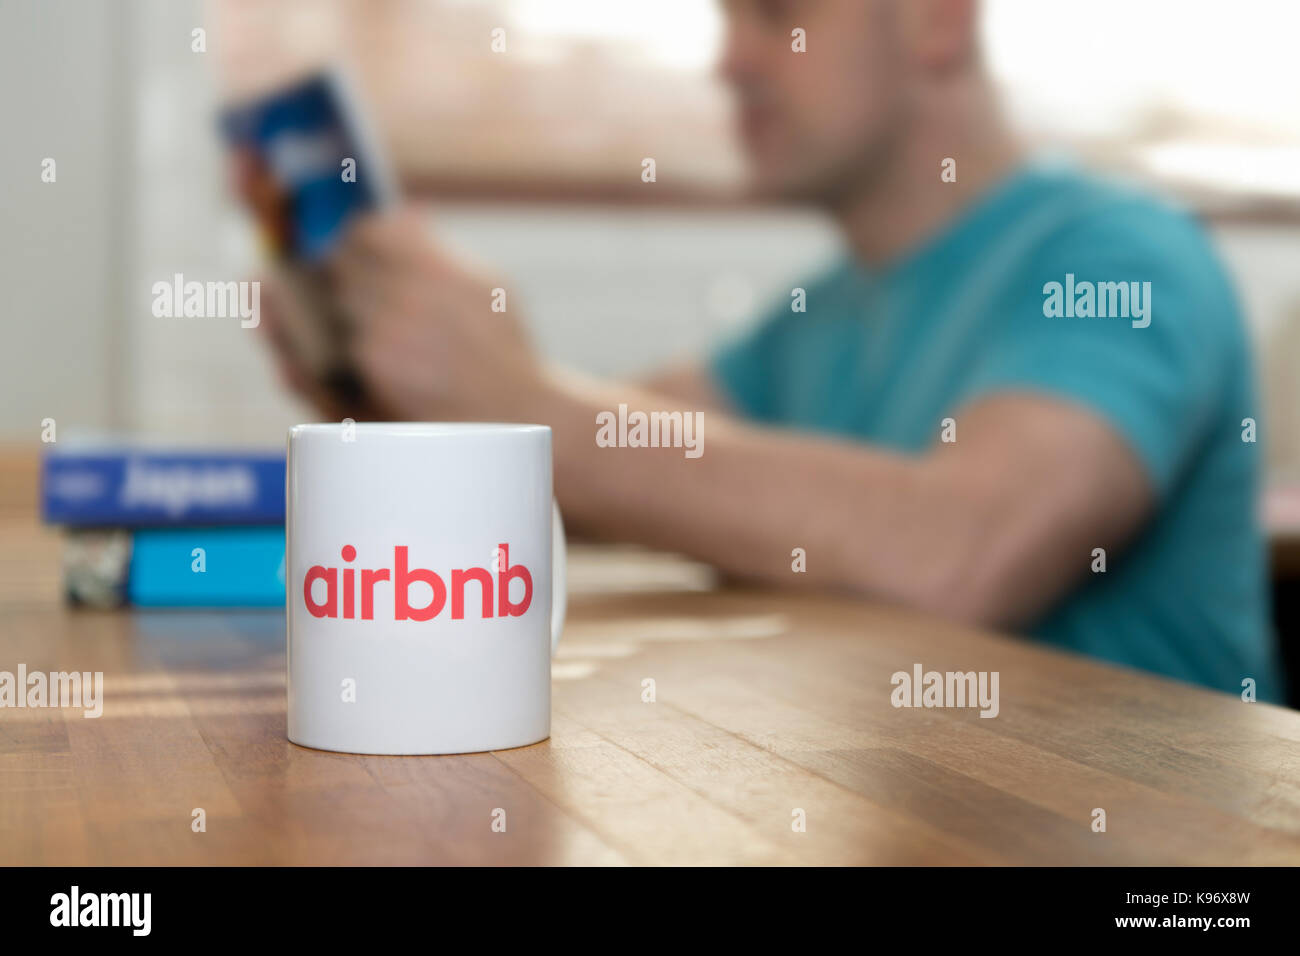 Un uomo legge guida viaggi libri in un appartamento che ha affittato usando le app Airbnb, e per i prodotti di marca Airbnb mug siede in primo piano (solo uso editoriale). Foto Stock